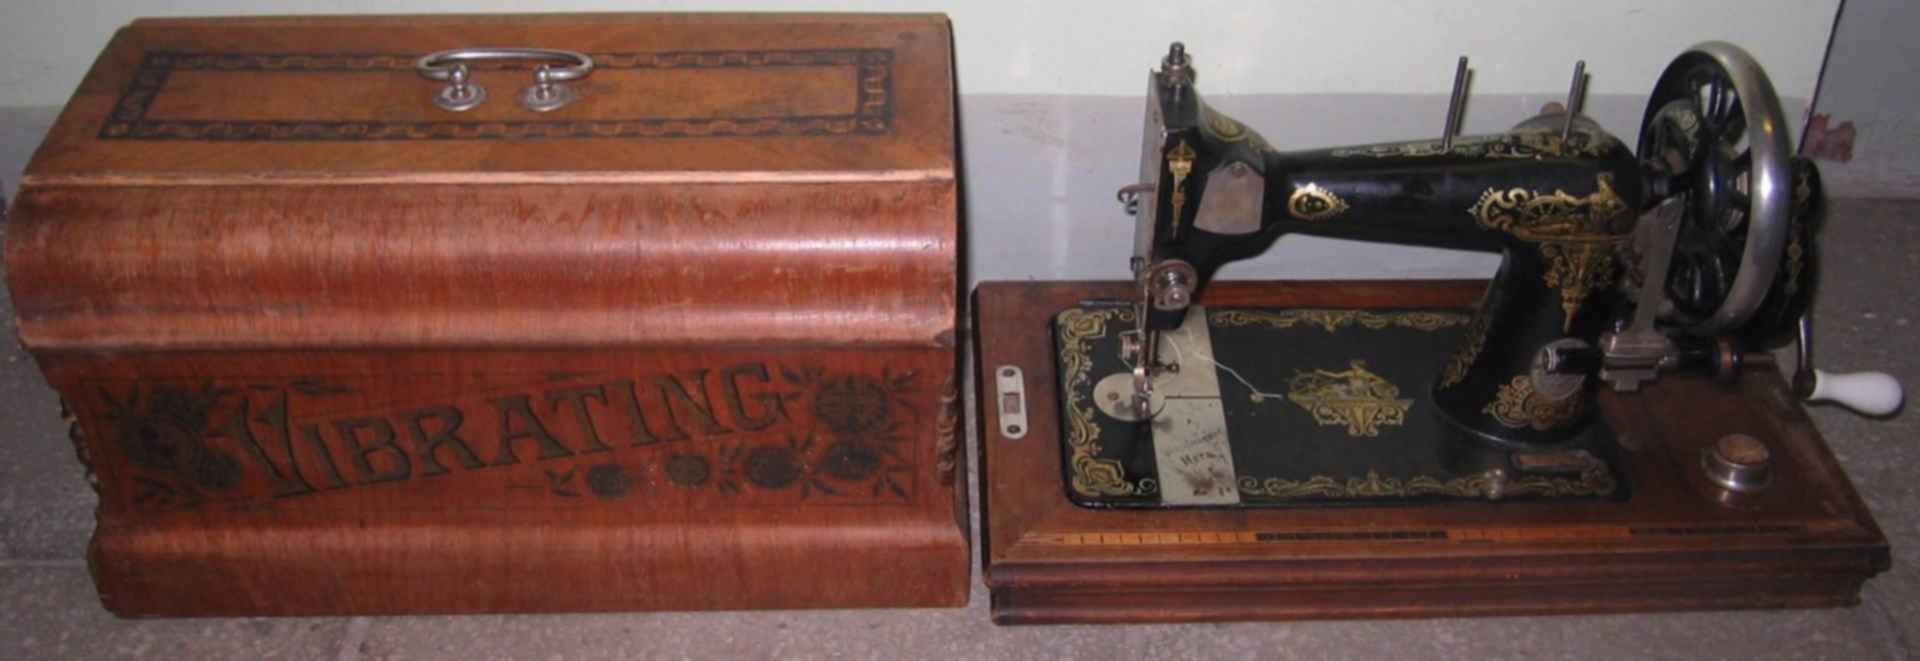 Купить старинную машинку. Старинная ручная швейная машинка Орион-150. Швейная машинка Кайзер. Швейная машинка Westfalia. Kaiser швейная машинка.